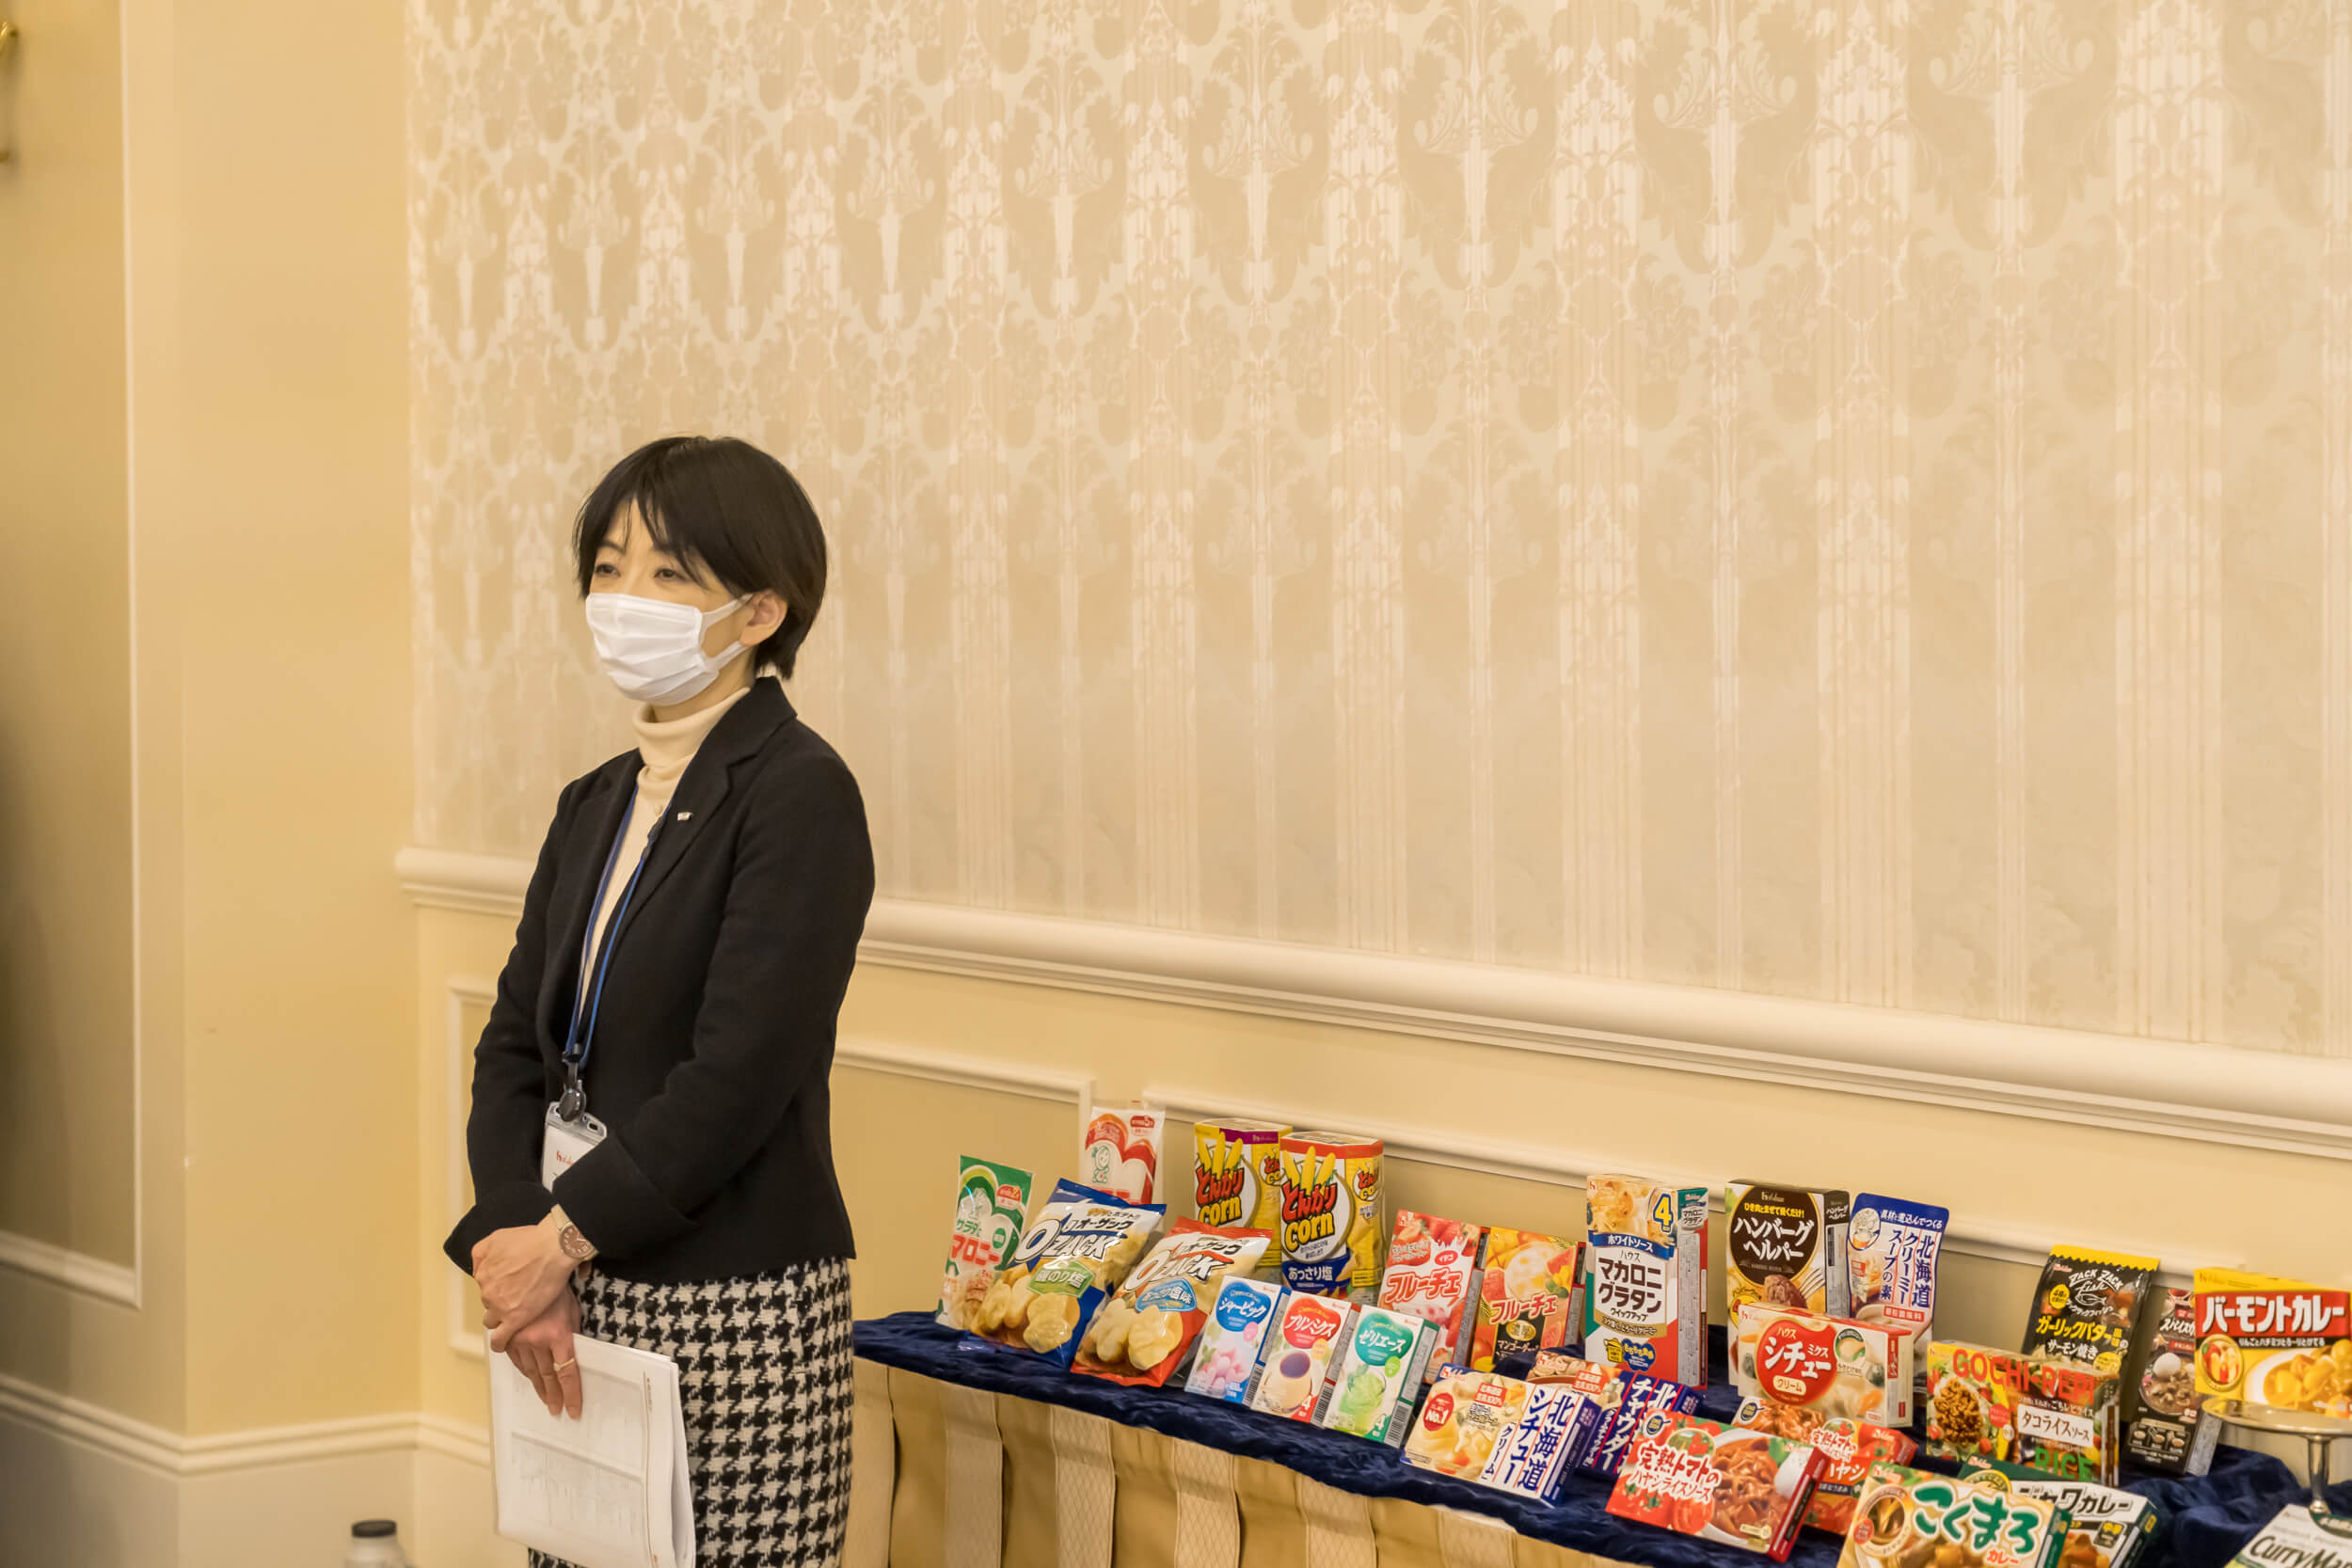 イベントの様子を見守る坂野さん。後ろに並ぶのはハウス食品グループの製品。